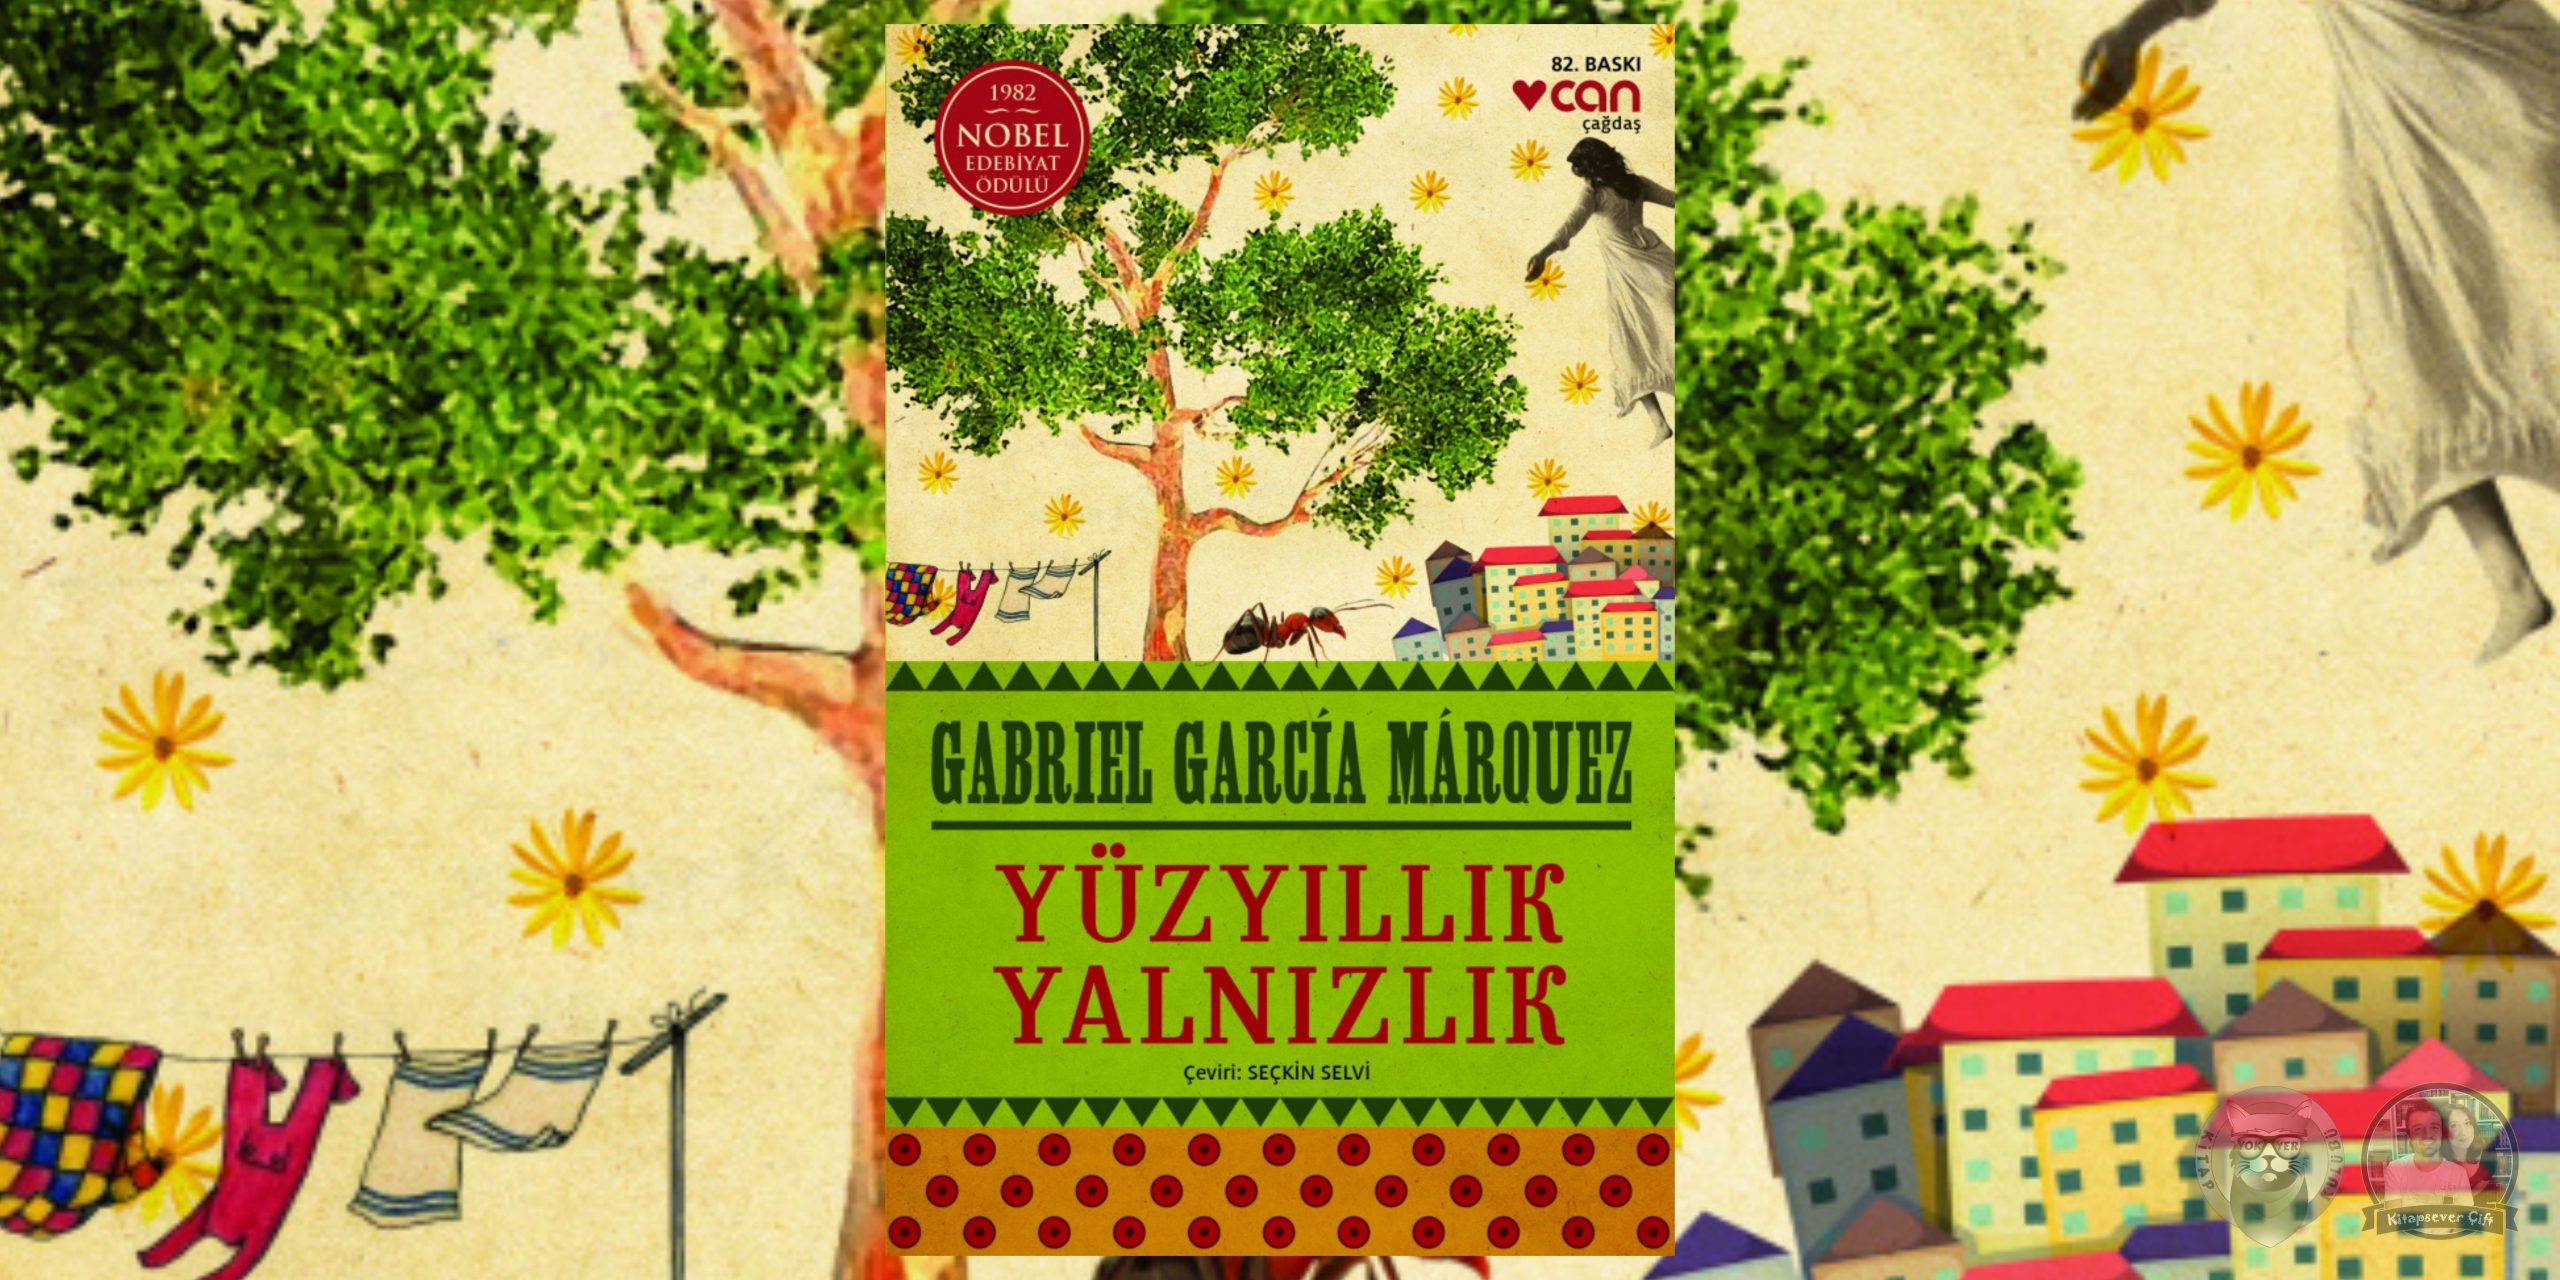 gabriel garcia marquez kitapları 3 – yuzyillik yalnizlik scaled